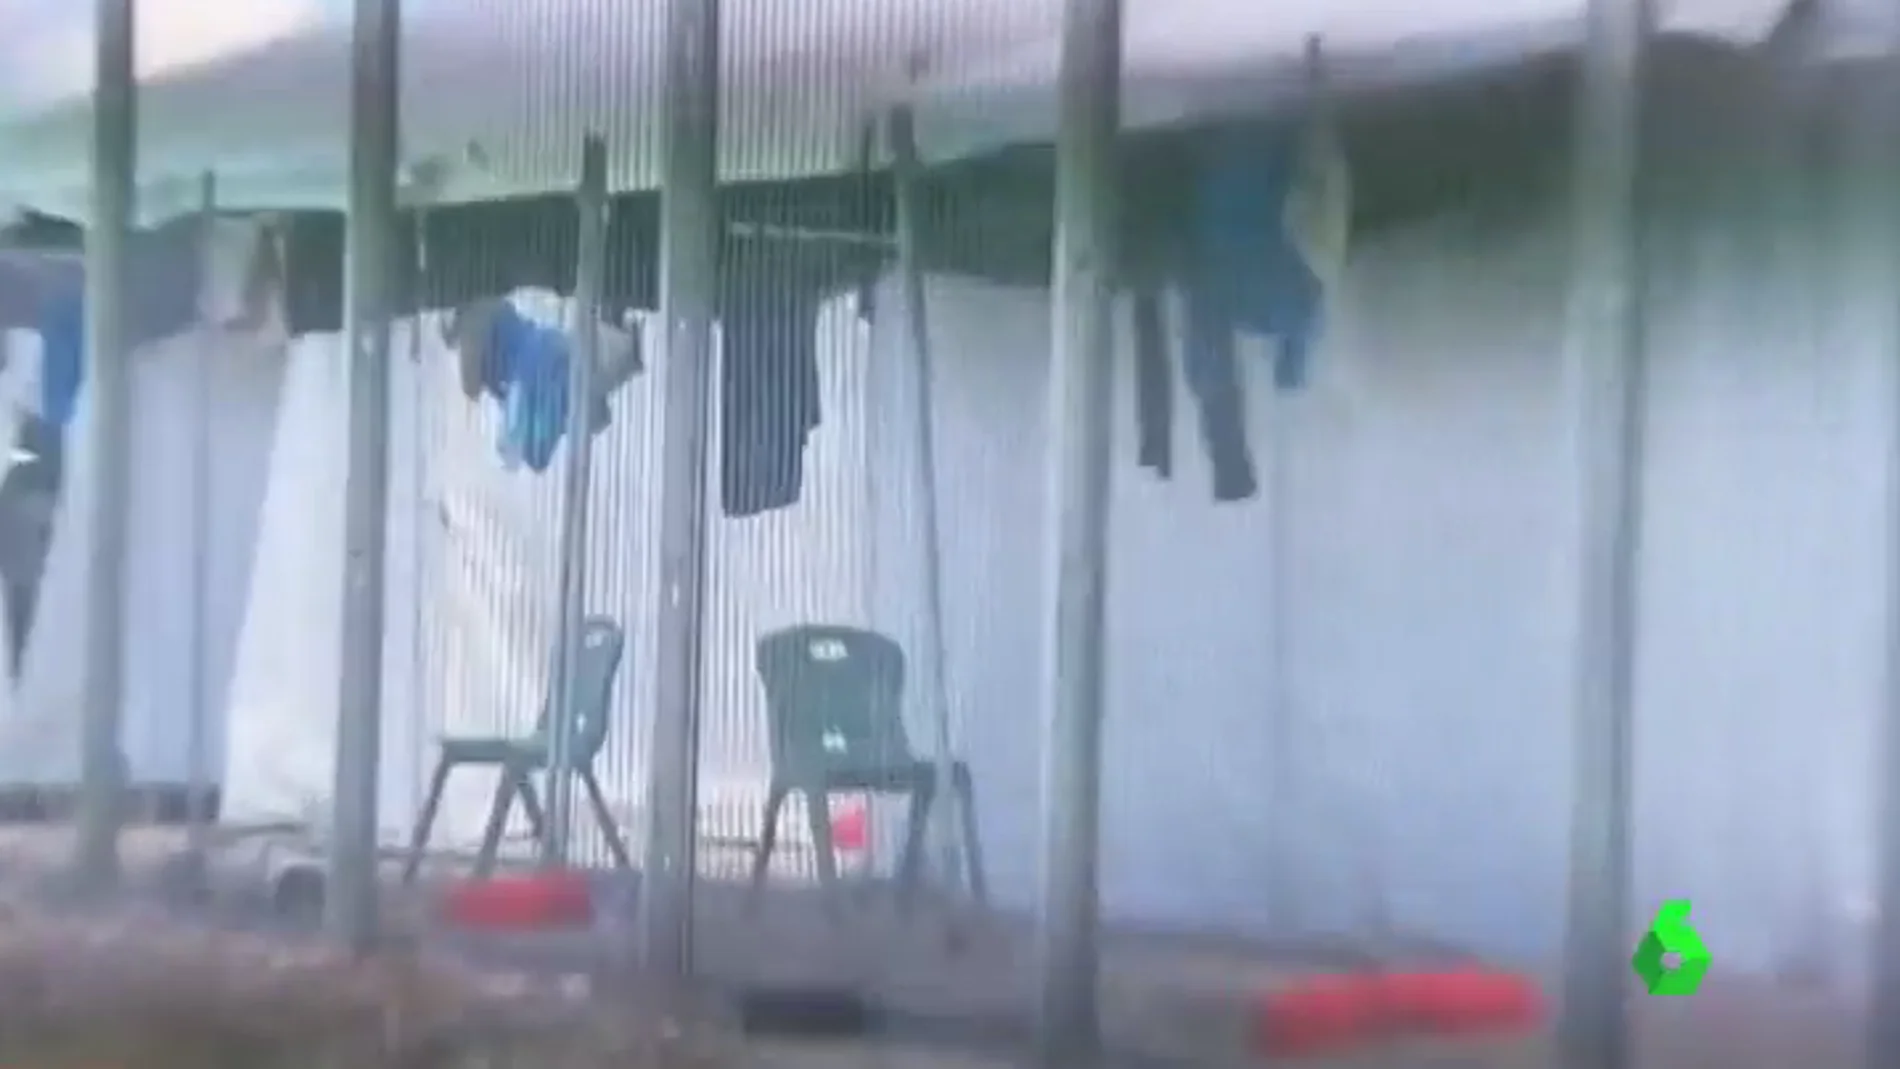 Frame 91.366188 de: Bichos, abusos, violaciones, intentos de suicidio... unas grabaciones muestran cómo viven los refugiados en Nauru